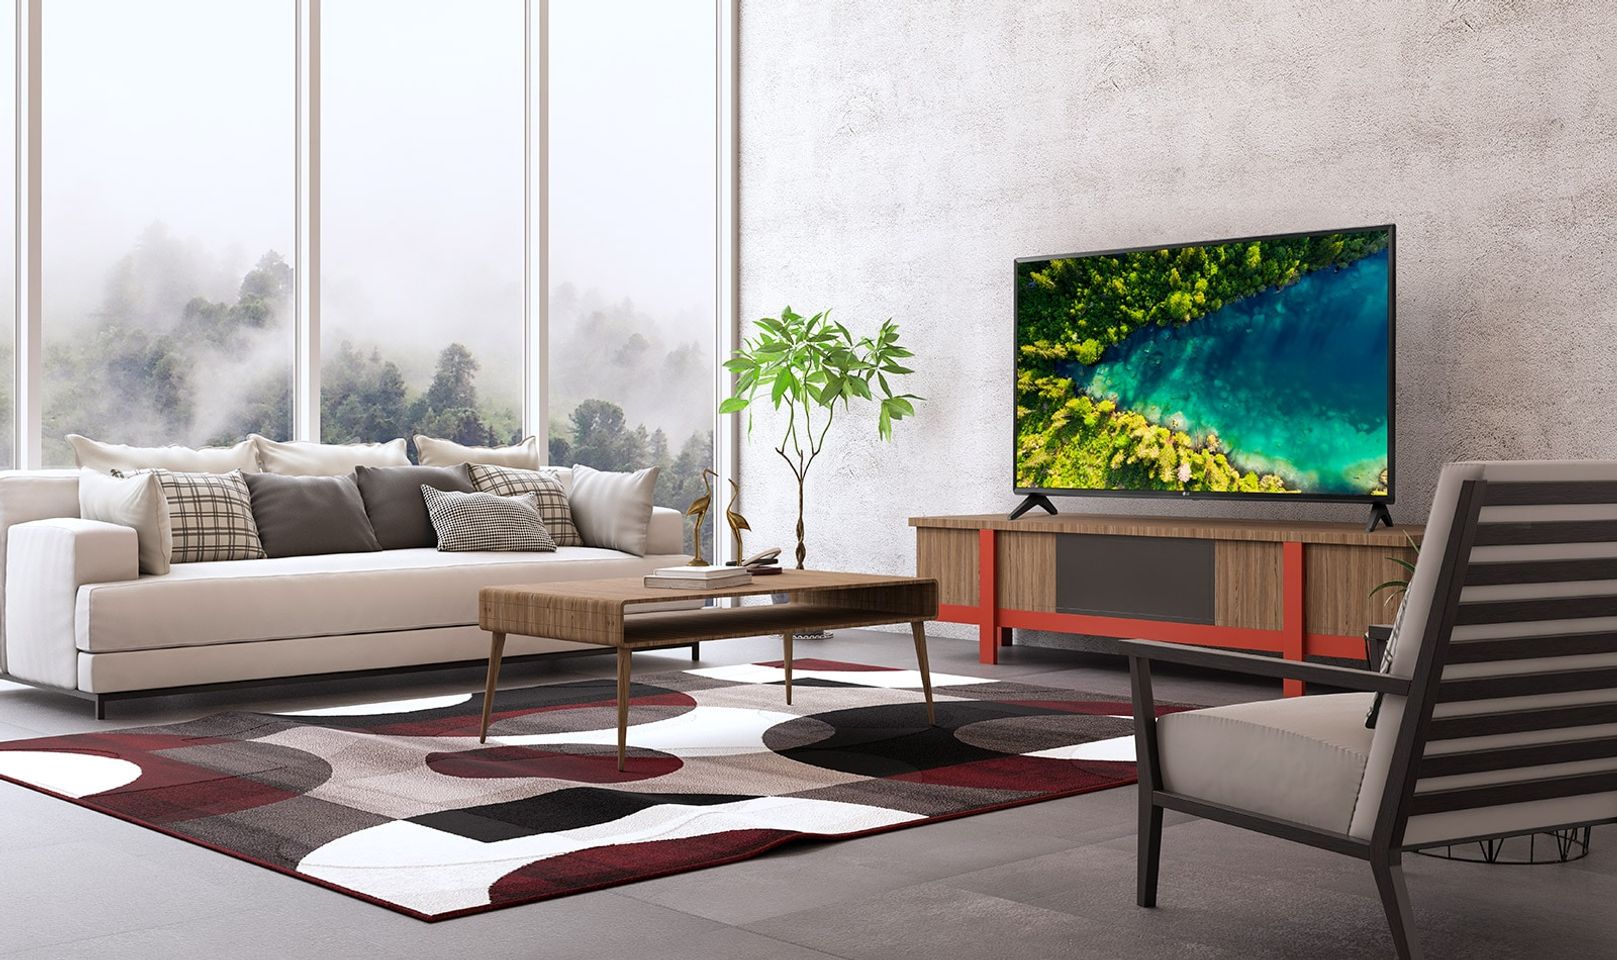 Một chiếc TV thể hiện một dòng sông chảy trong khu rừng rậm rạp của Top View từ khung cảnh một ngôi nhà hiện đại và đơn giản.